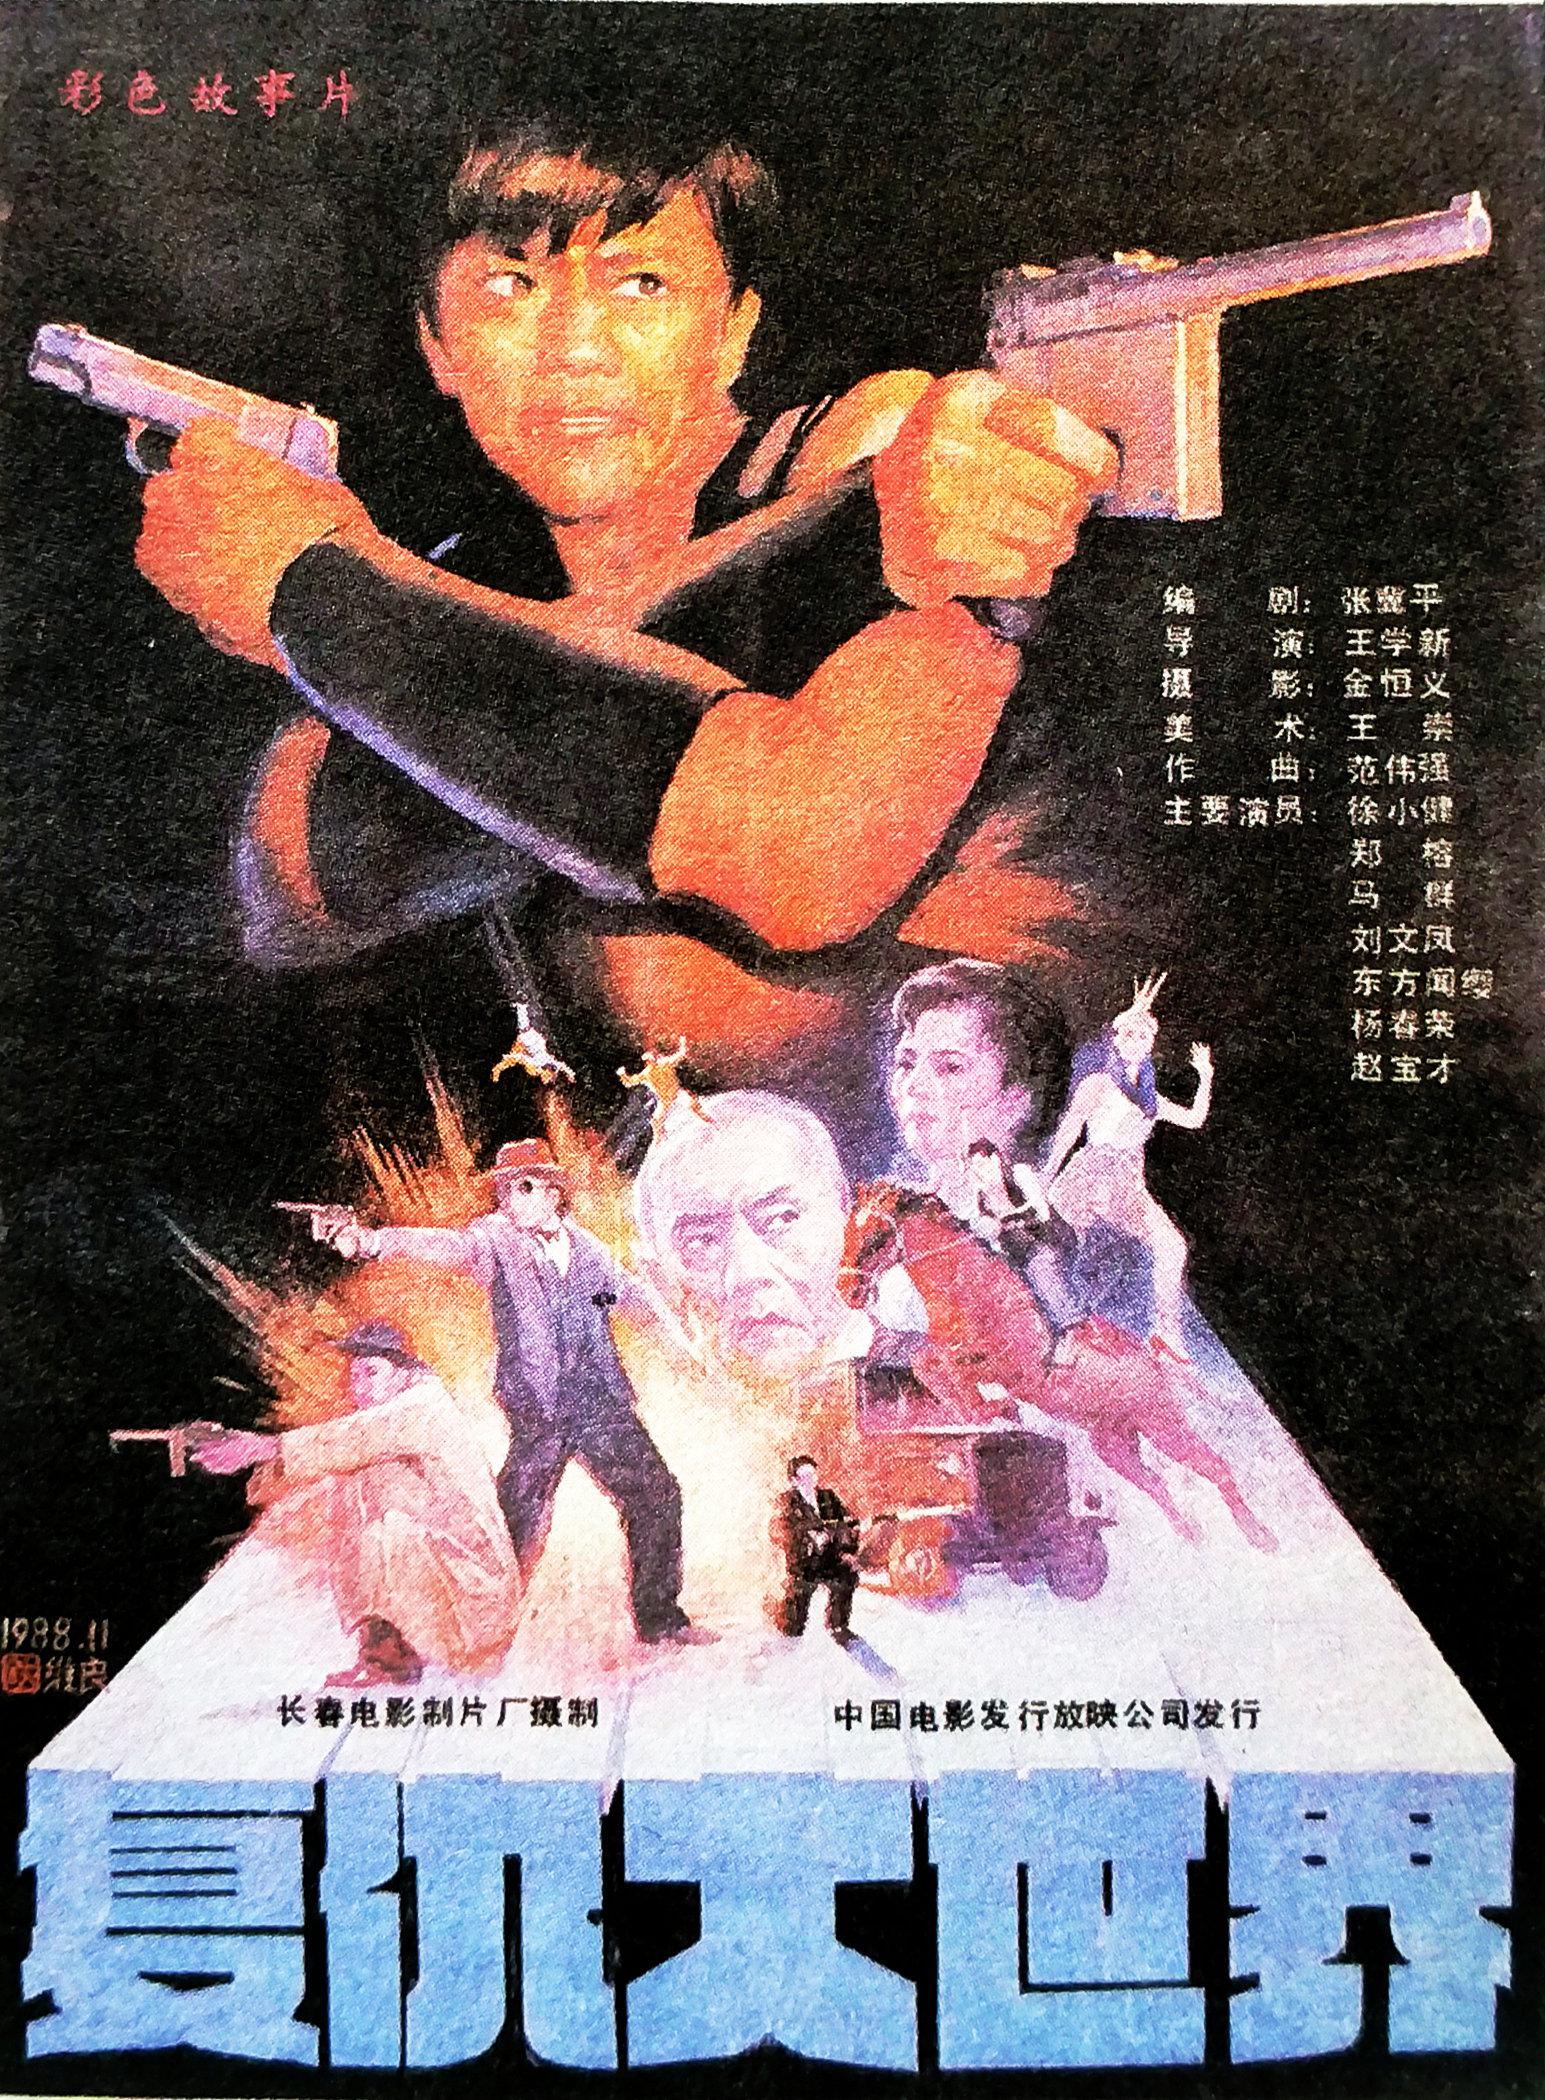 Fu chou da shi jie (1989)